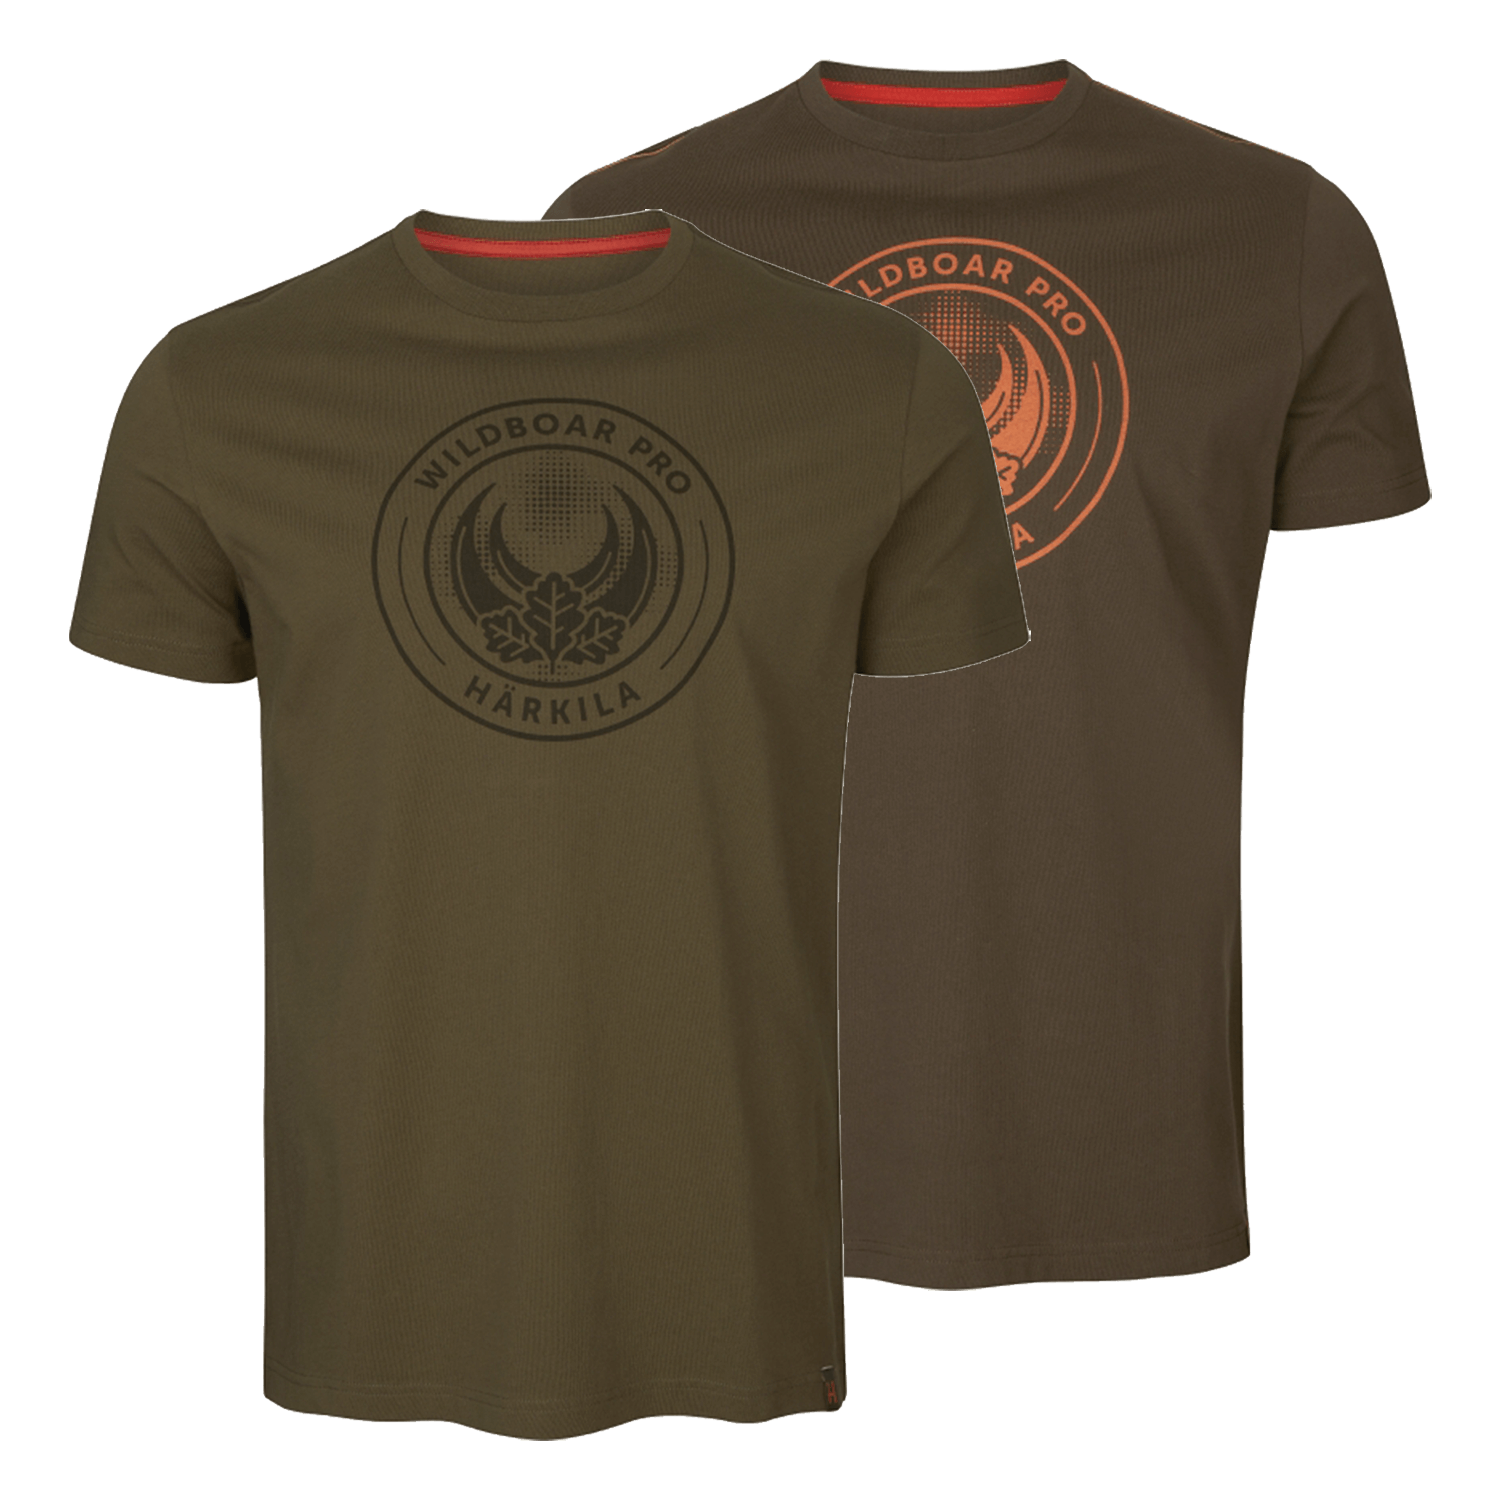 Härkila T-Shirt 2er-Pack Wildboar Pro Limited Edition - Geschenke für Jäger